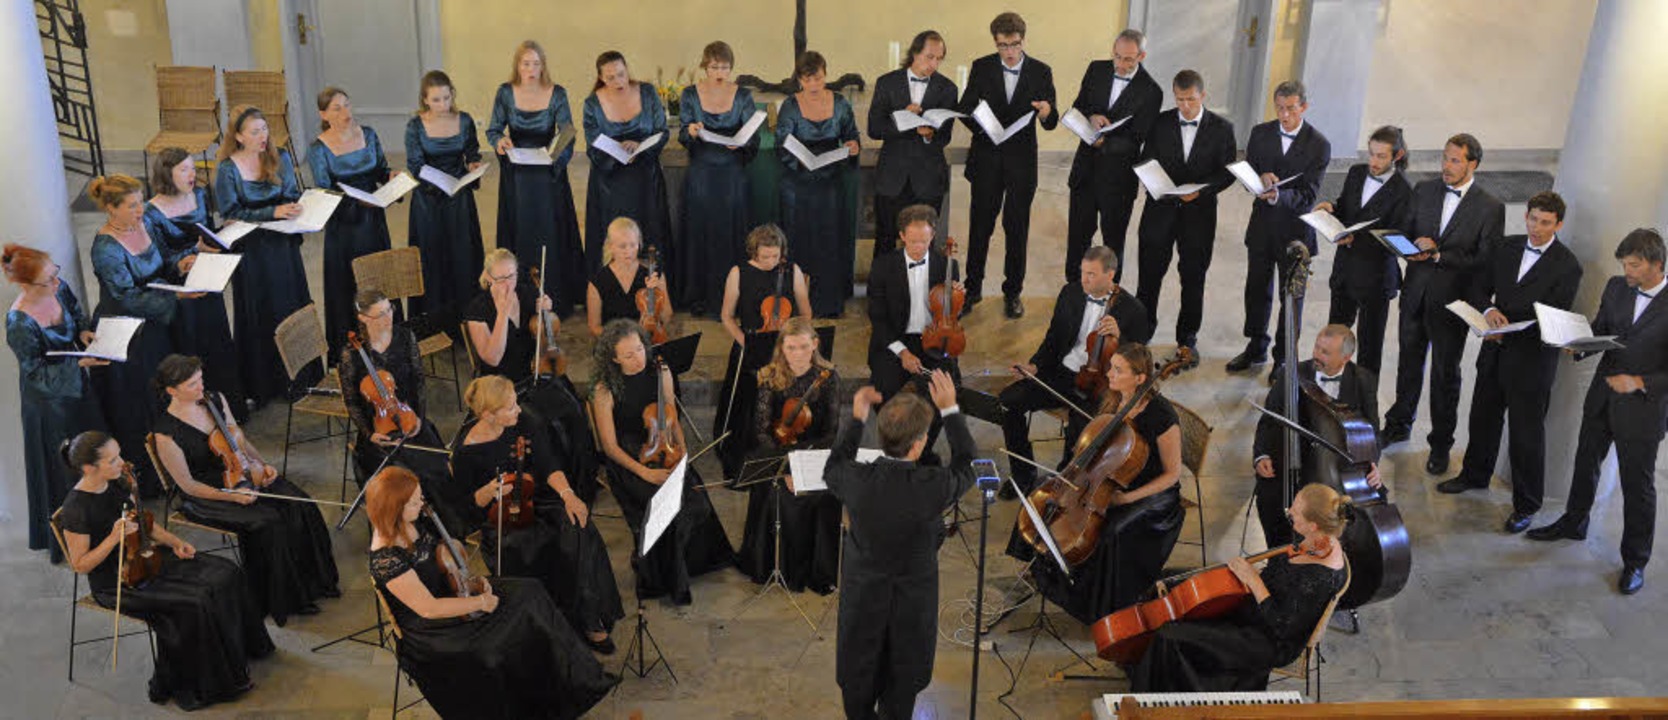 Schöne Stimmen: die Sängerinnen und Sä...Choro aus Prag samt Instrumentalisten   | Foto: Ruda